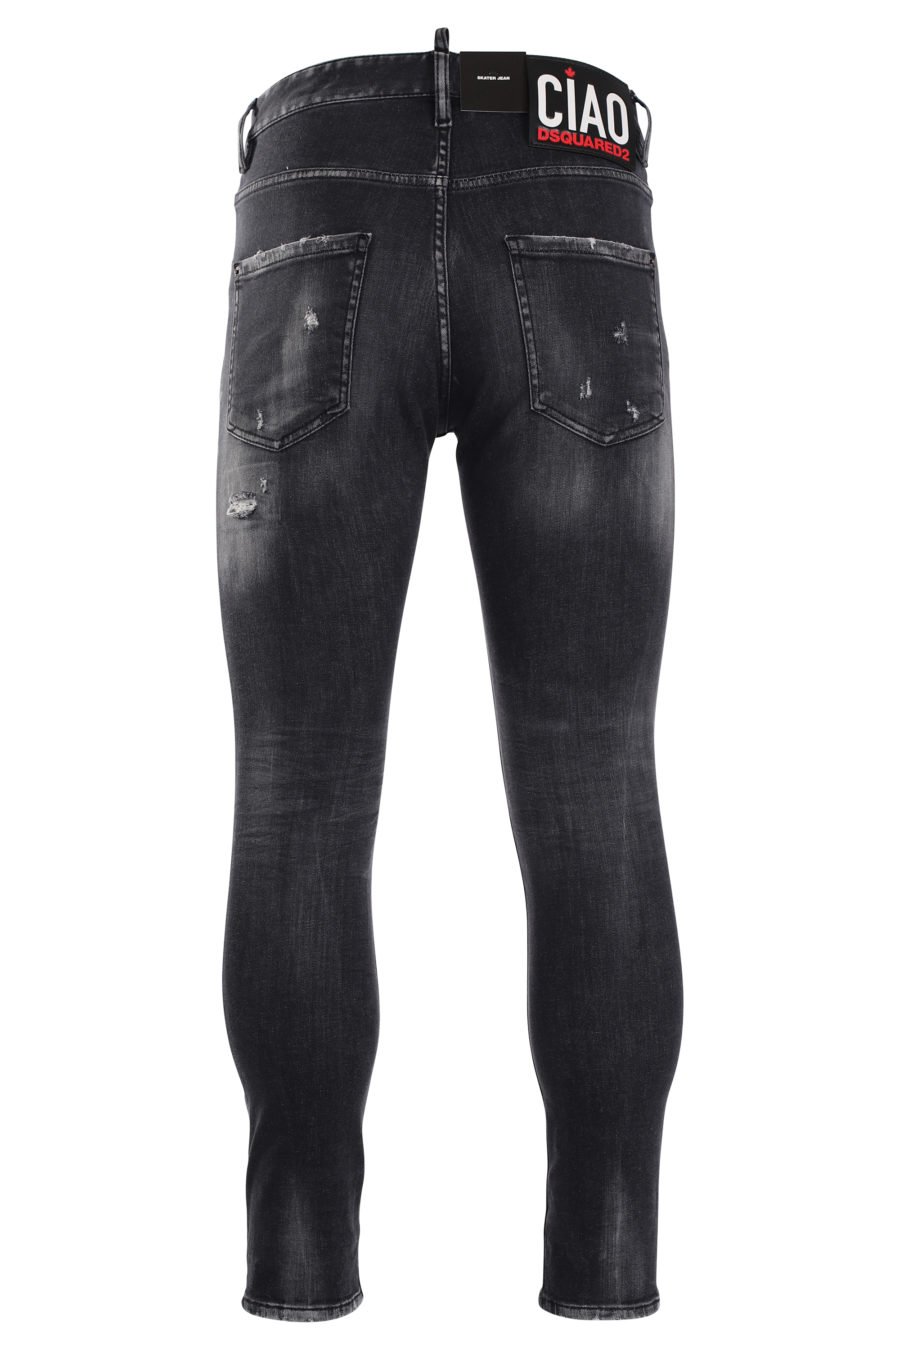 Pantalon patineur en denim avec jean usé noir et logo "D2" noir - IMG 9987